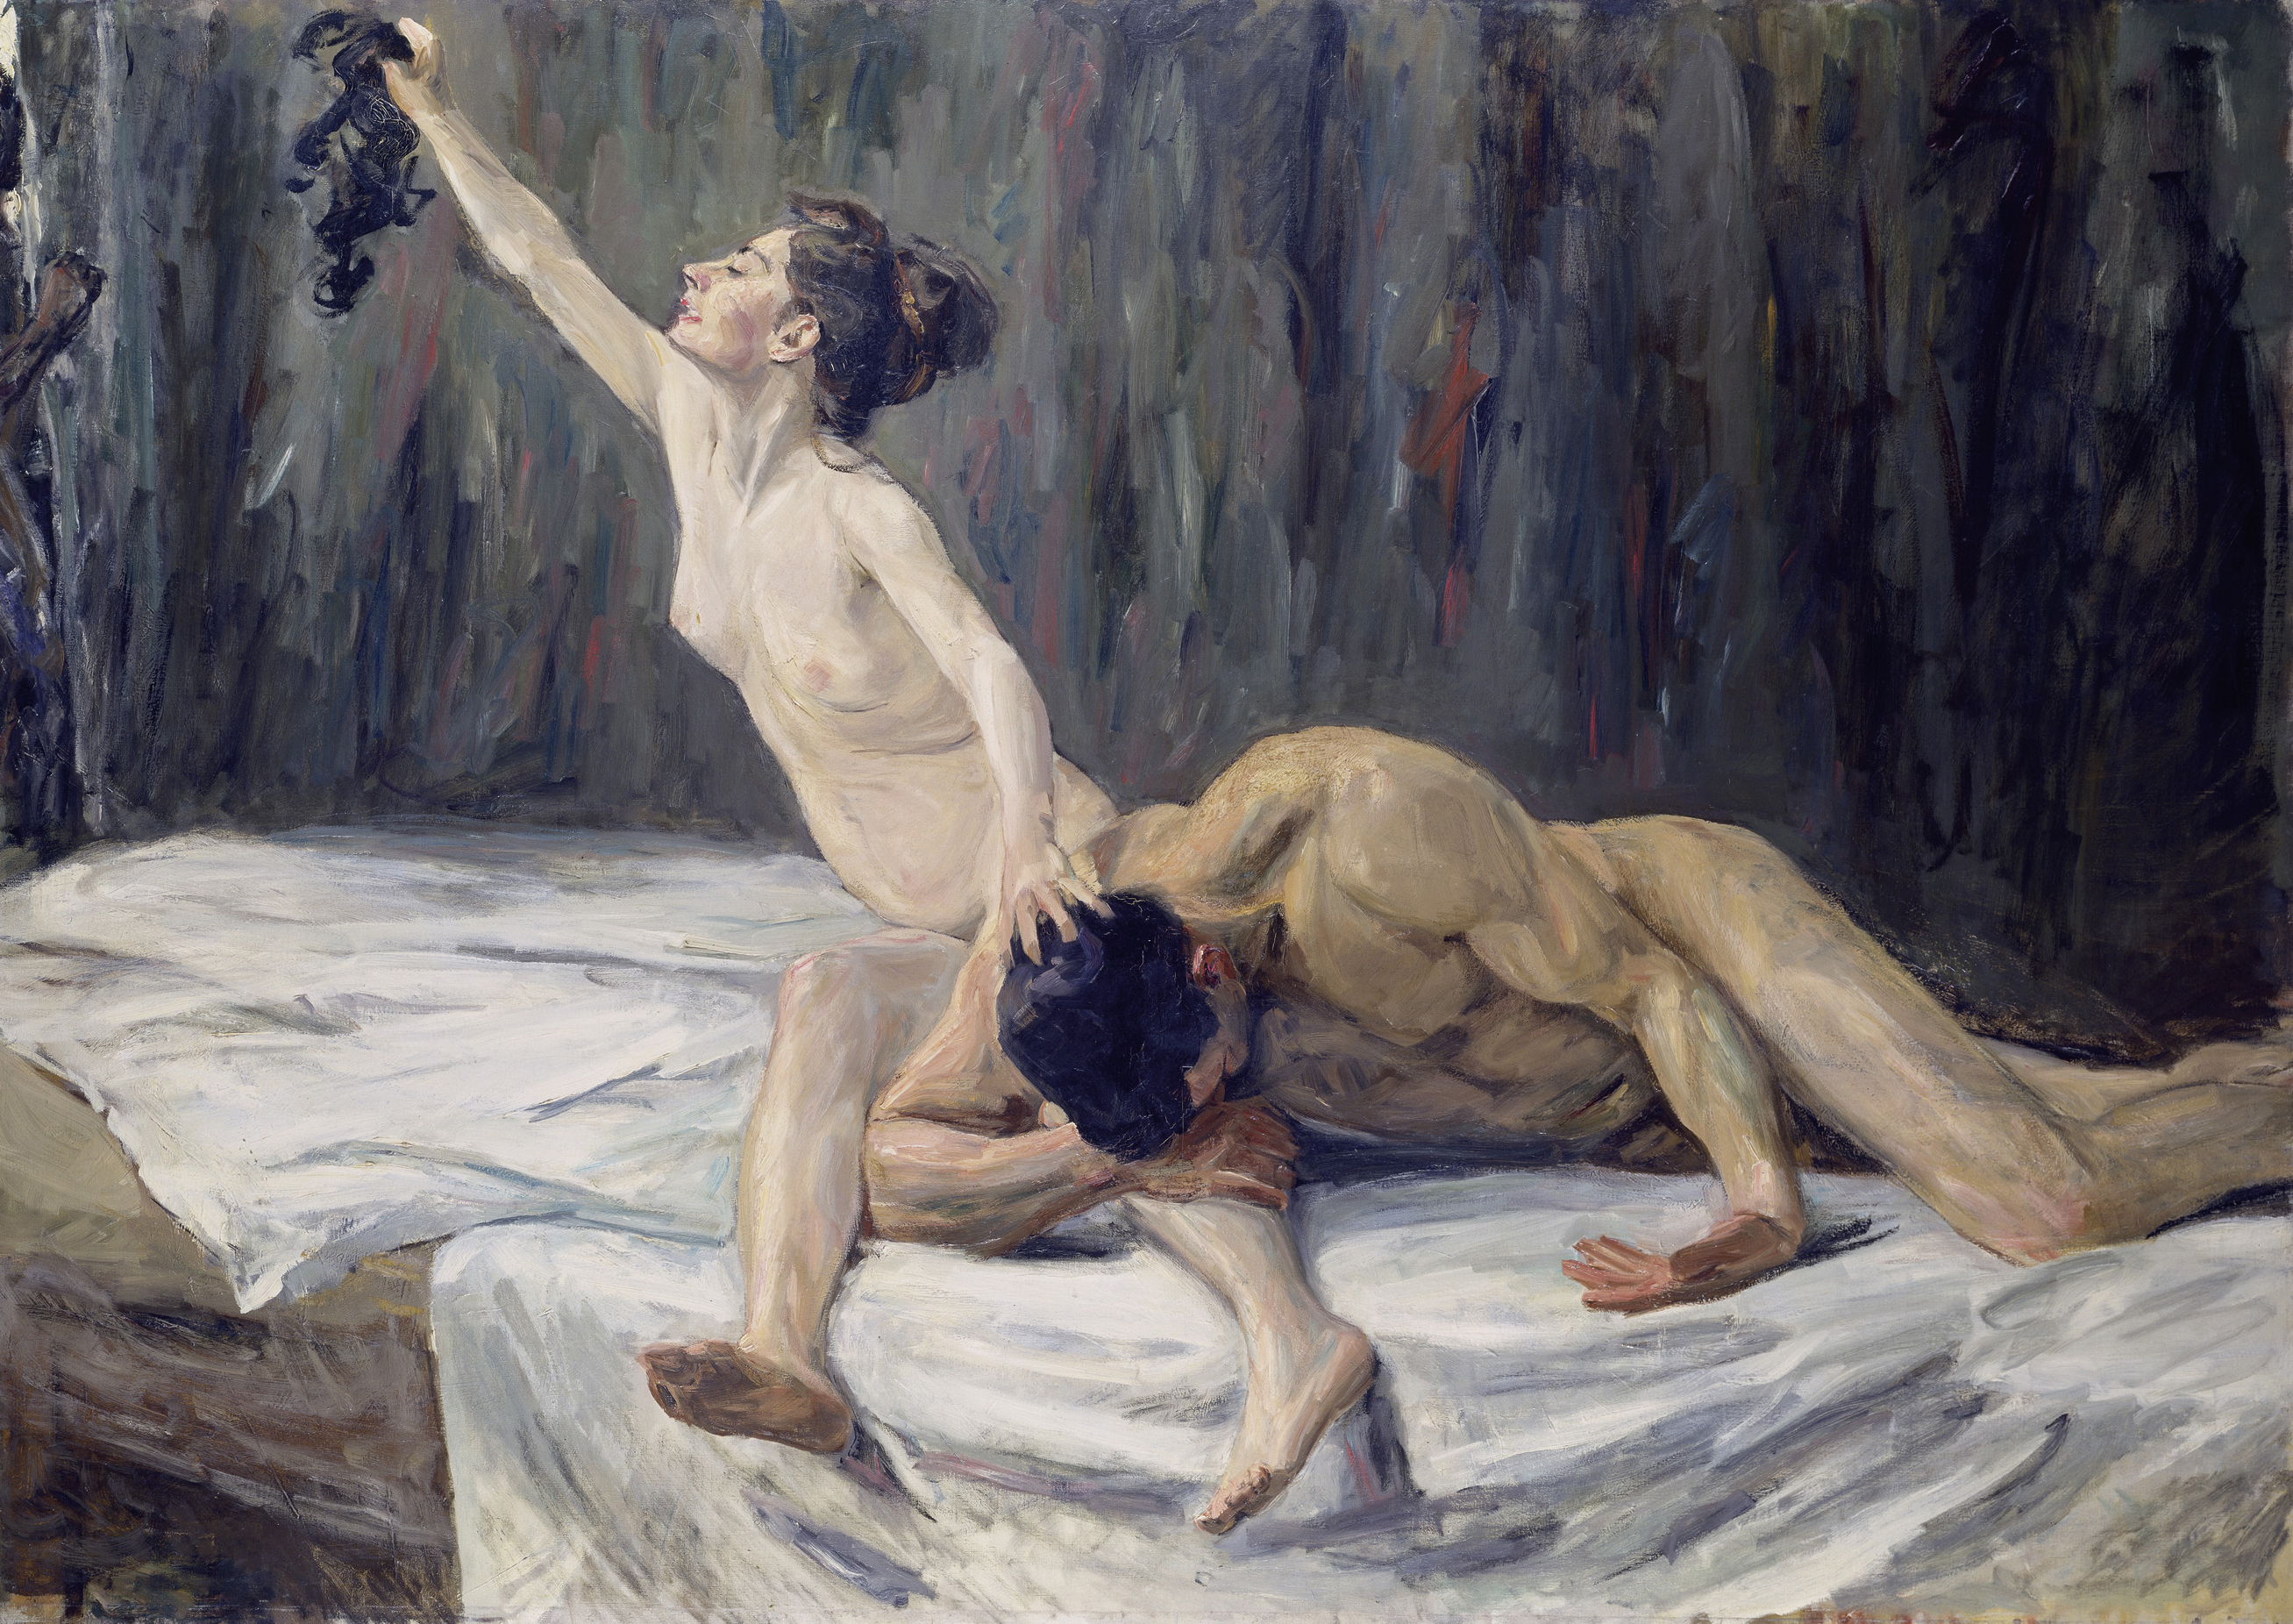 Max Liebermann (1847–1935) Simson und Delila, 1902 Öl auf Leinwand, 151,2 x 212 cm Städel Museum, Frankfurt am Main © Städel Museum, Frankfurt am Main